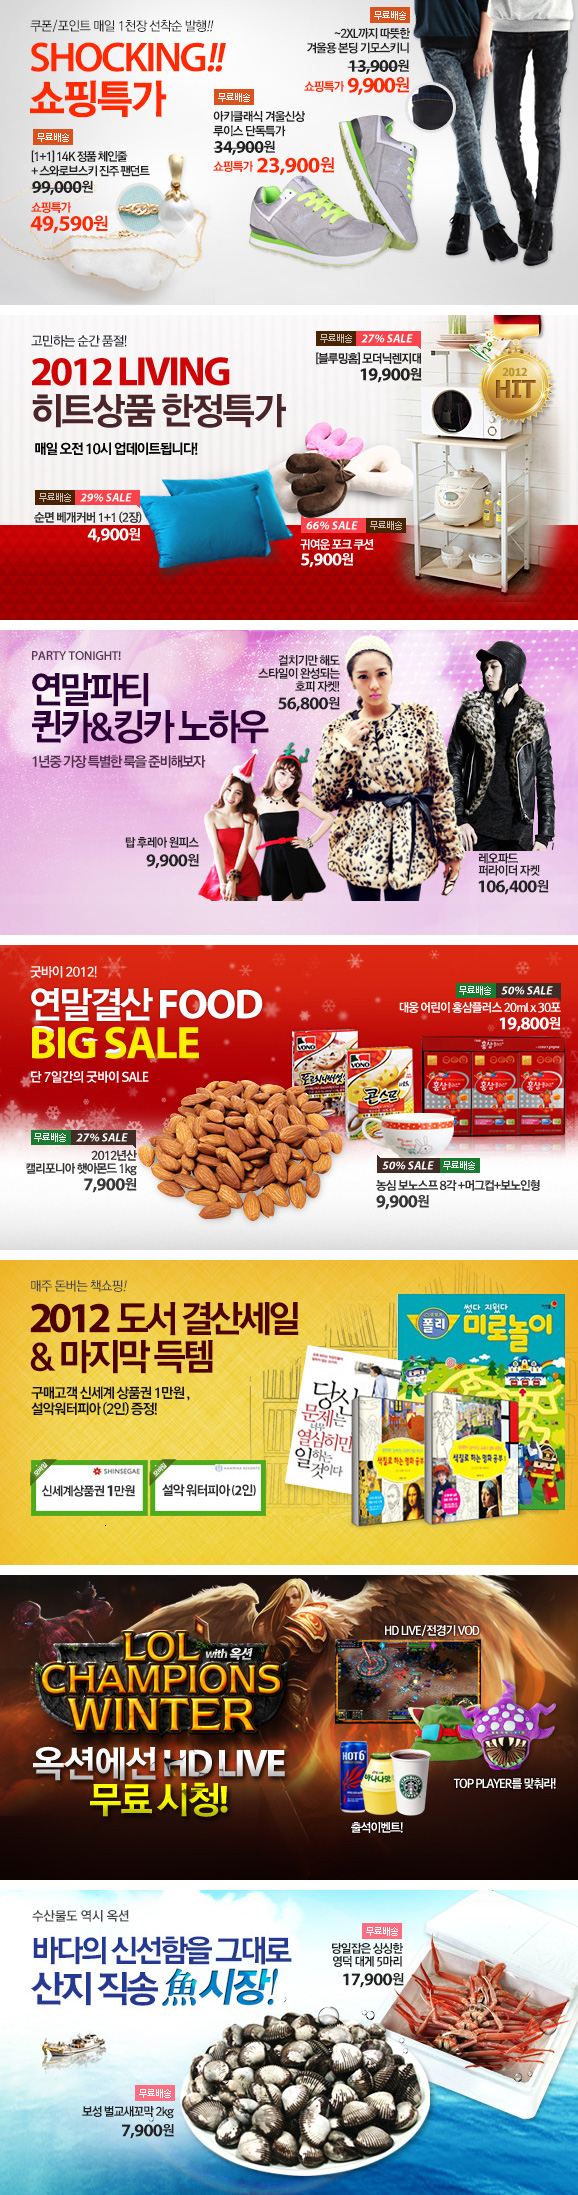 韩国购物网站Banner设计欣赏1228